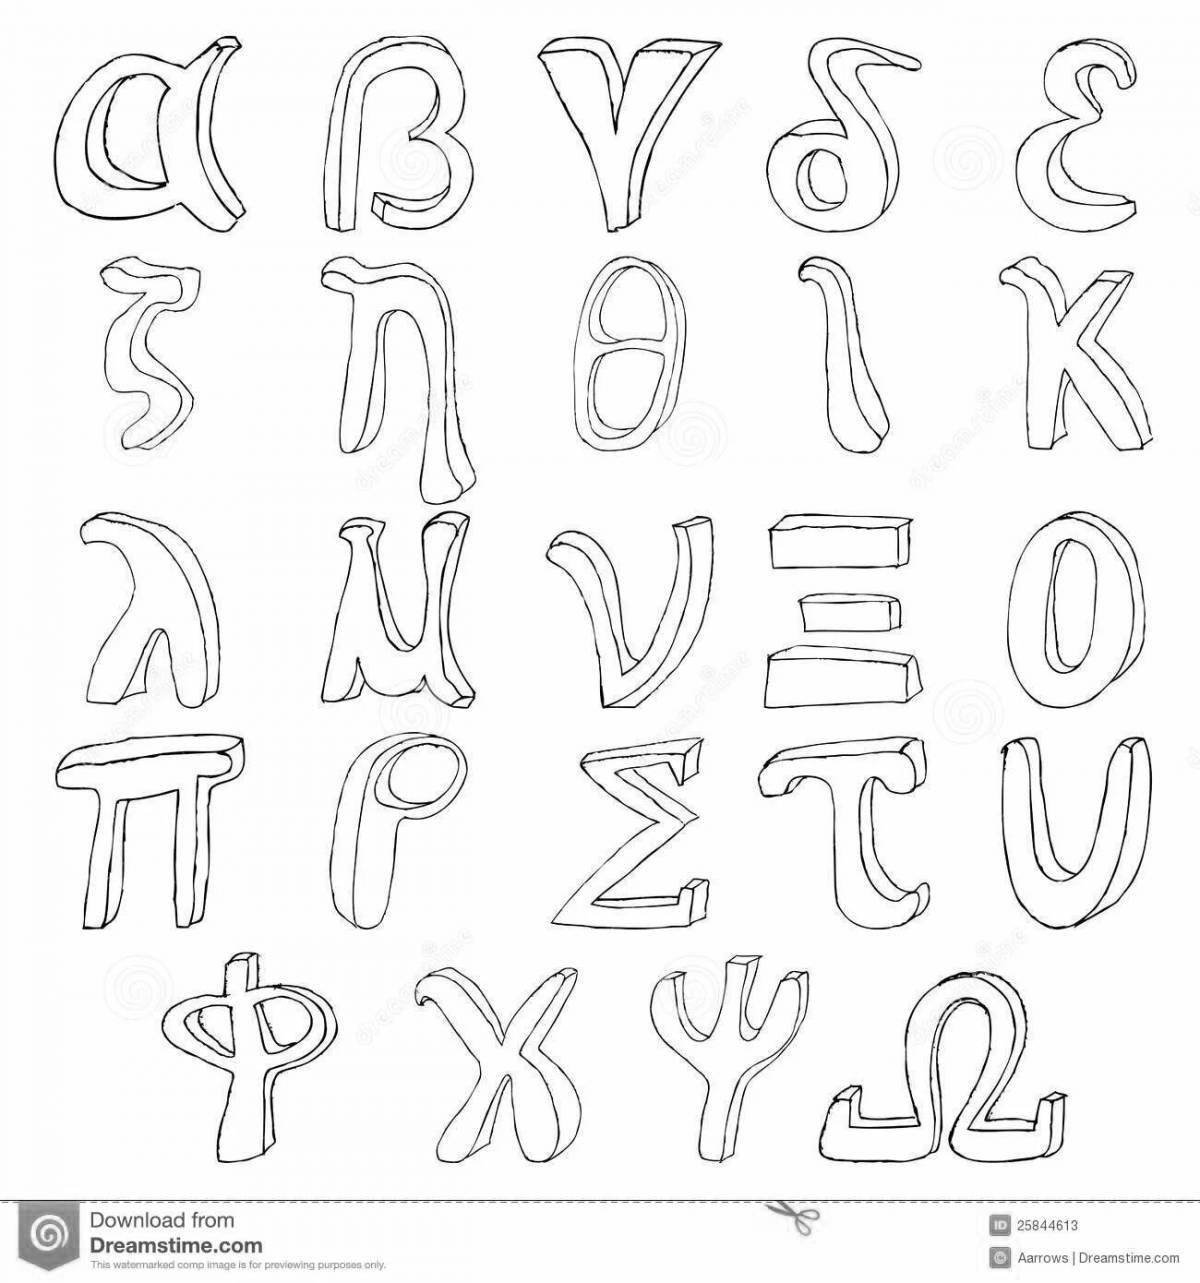 Греческий алфавит #2